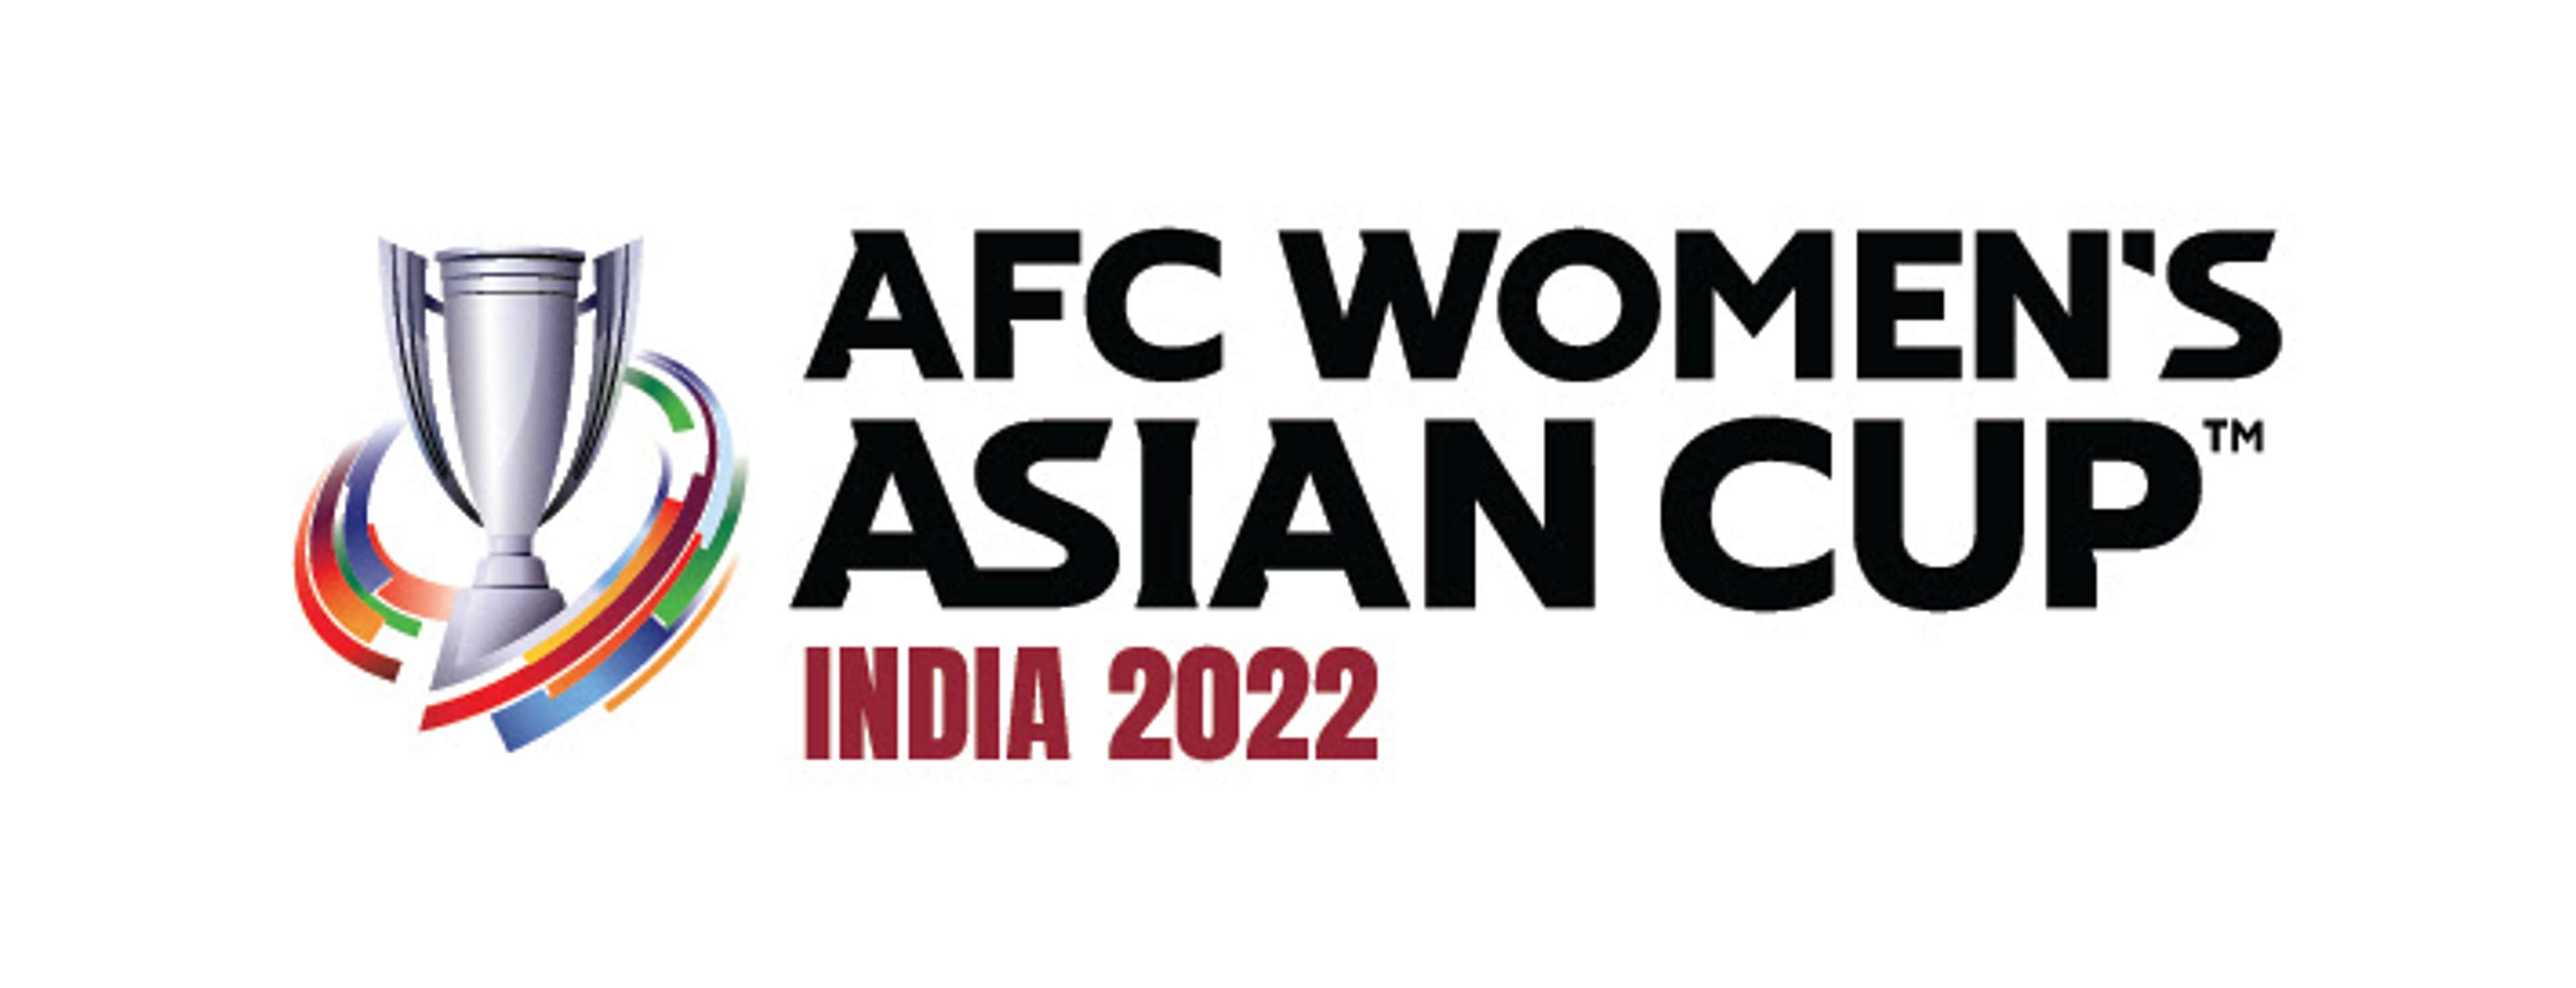 AFC Women's Asian Cup 2022 logo